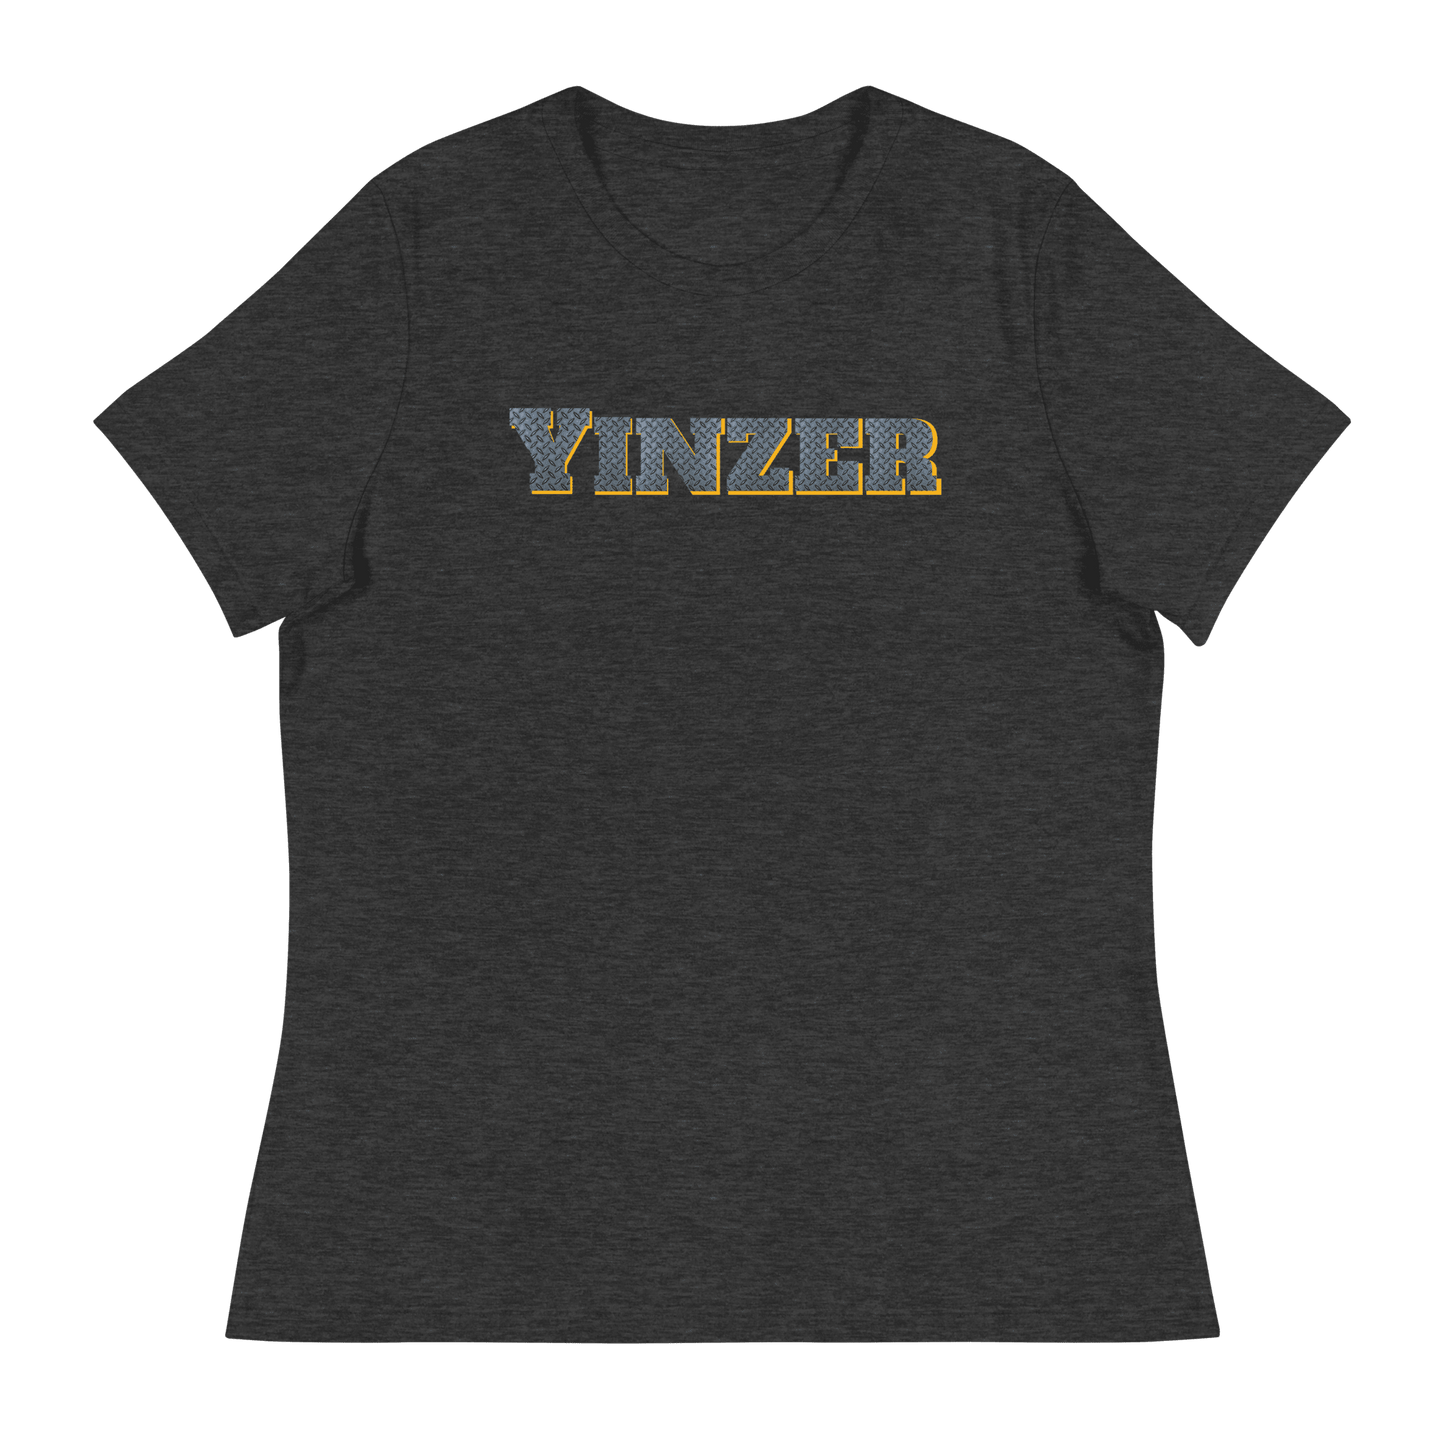 Yinzer Women's T-Shirt Yinzergear Dark Grey Heather S 